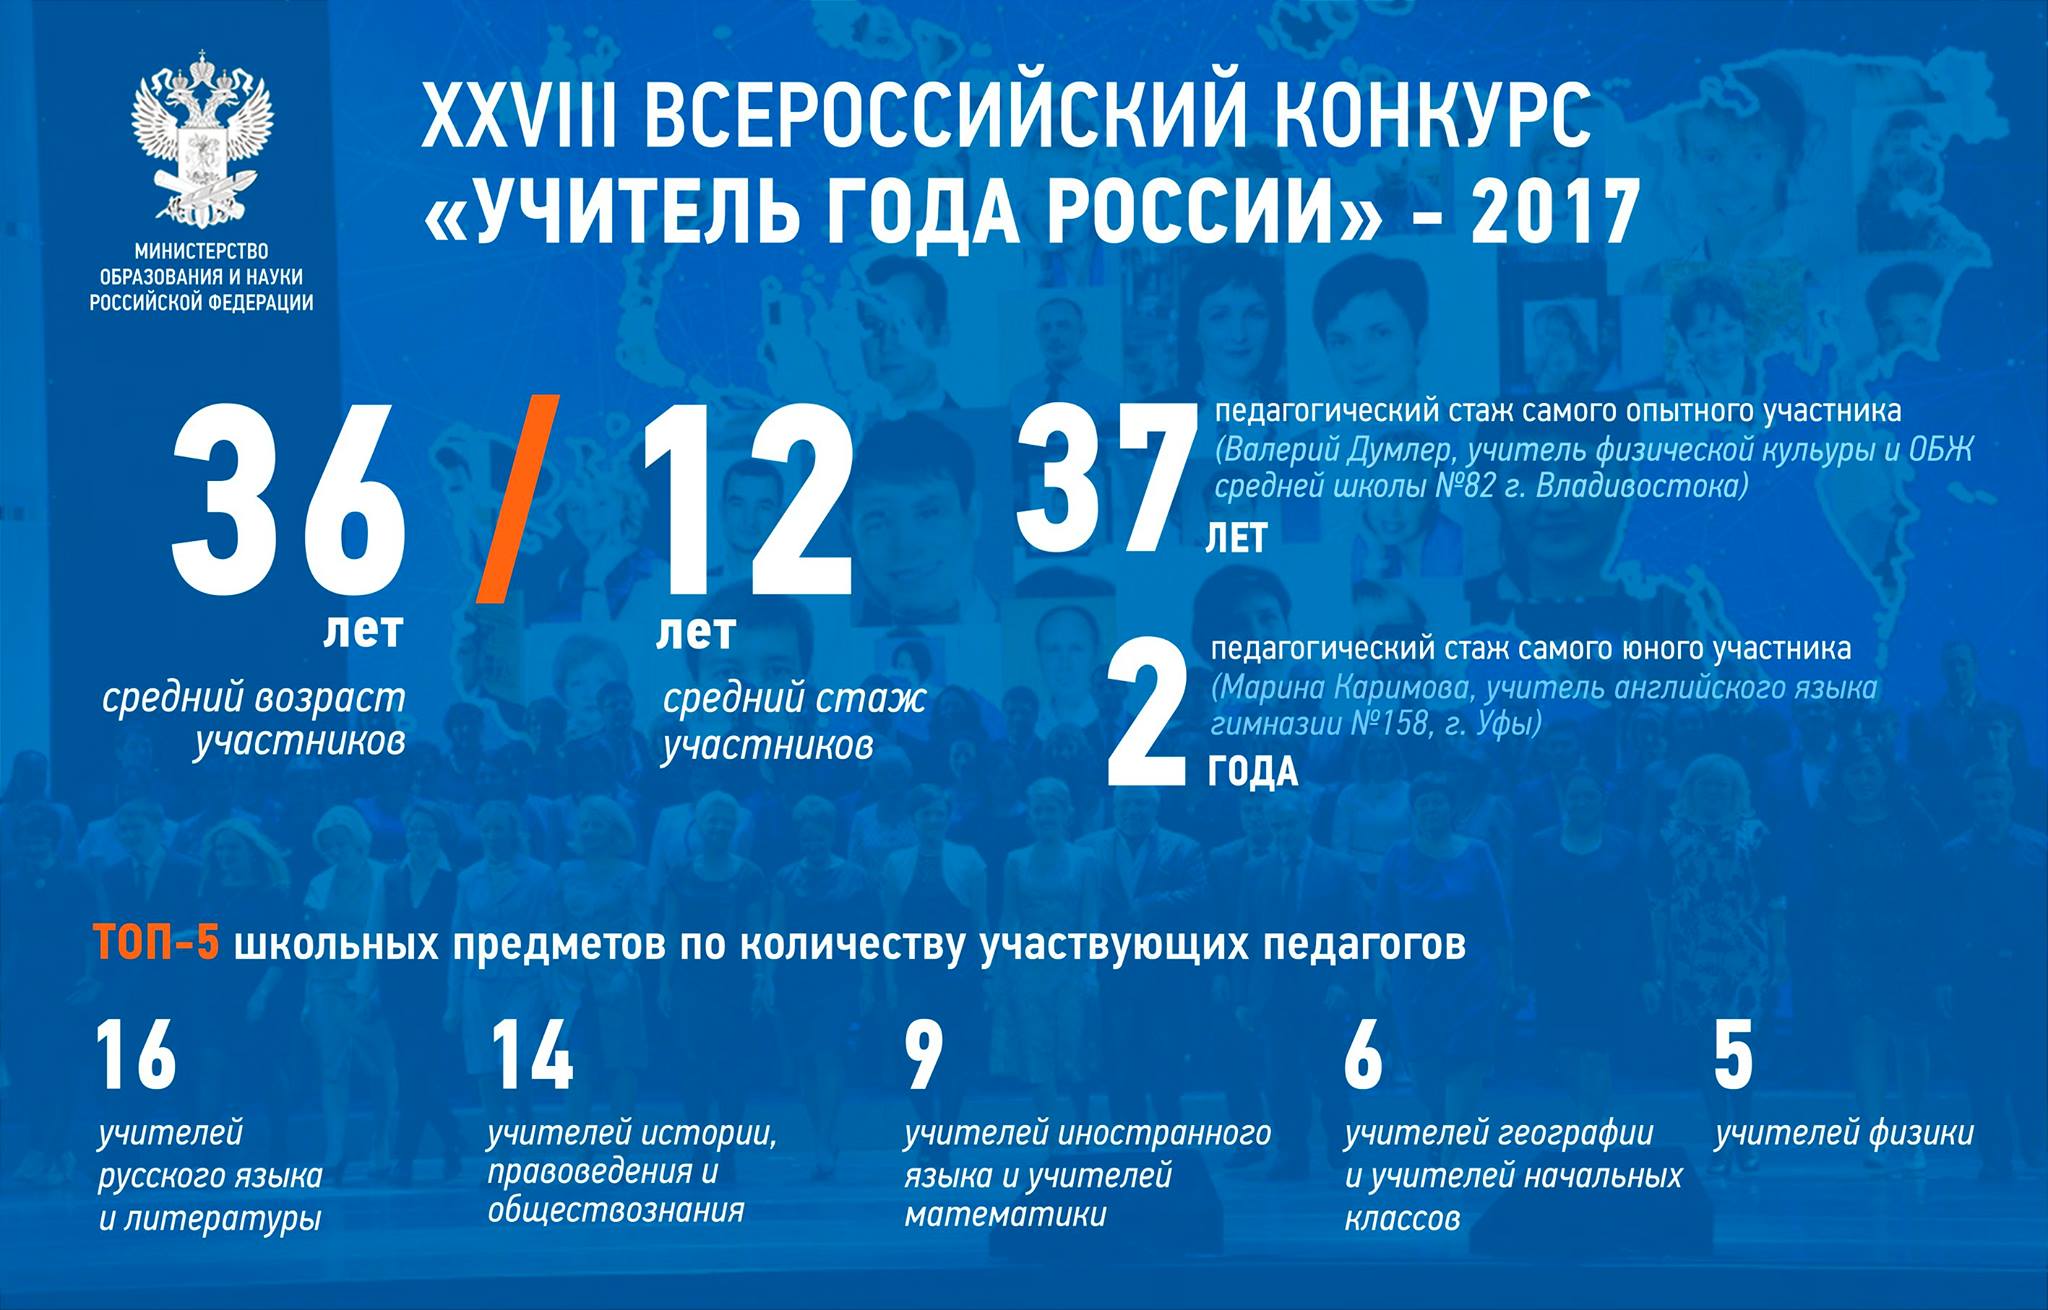 XXVIII Всероссийский конкурс Учитель года России – 2017